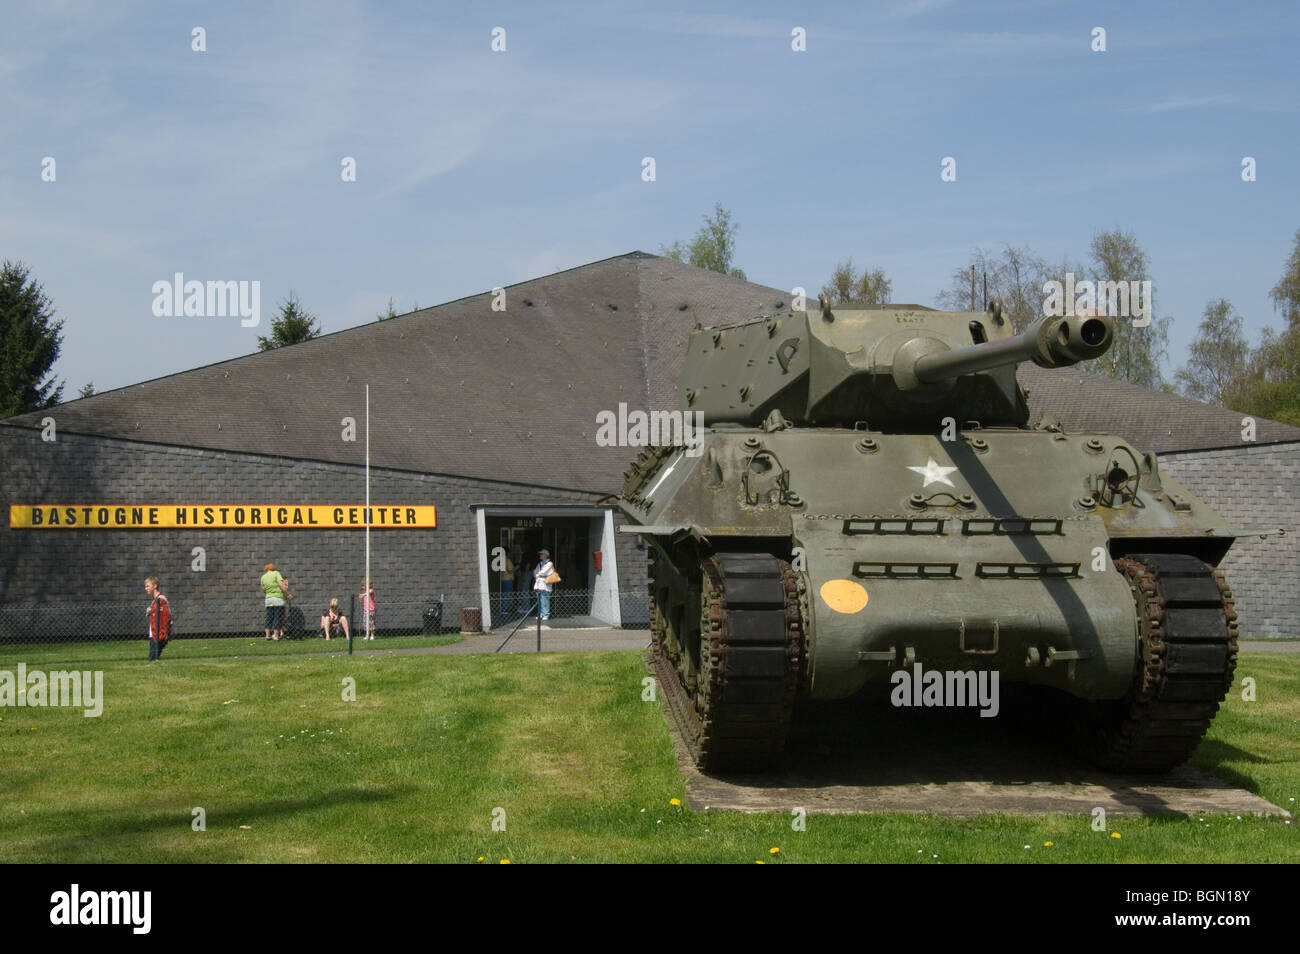 Amerikanische M10 Wolverine Jagdpanzer aus der Ardennenoffensive im Musée Bastogne Historical Center, Ardennen, Belgien Stockfoto